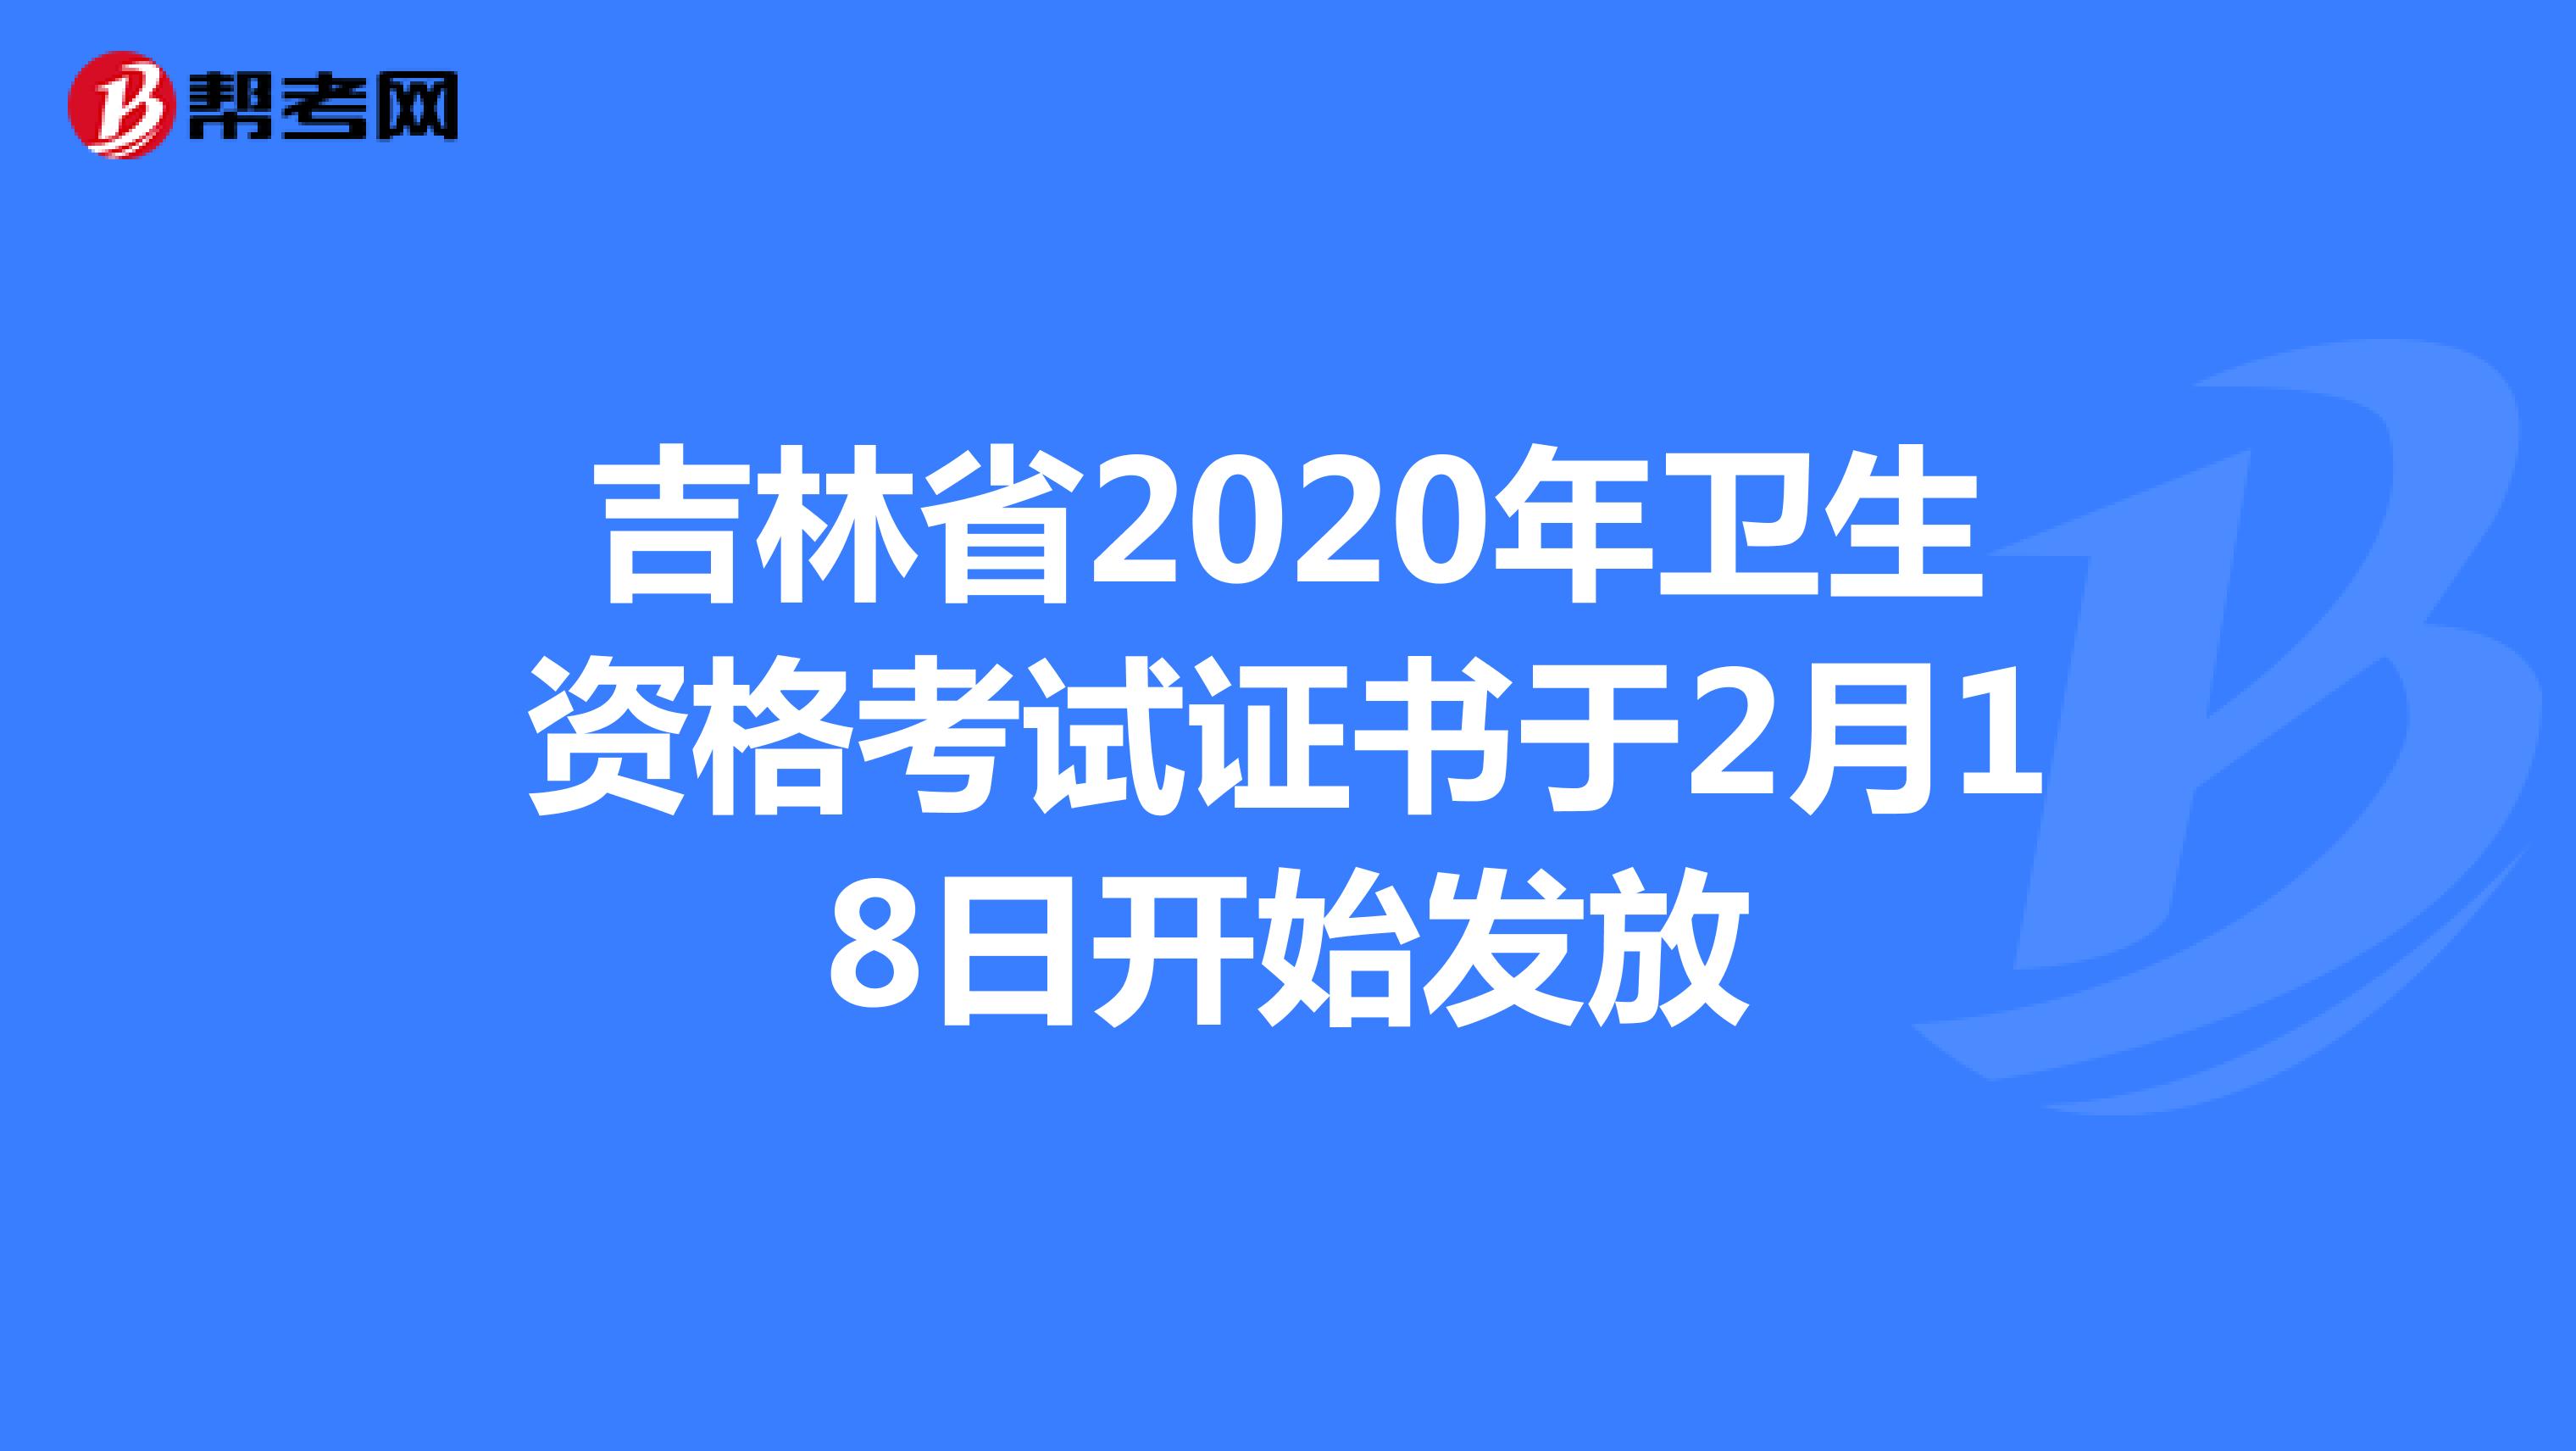 吉林省2020年卫生资格考试证书于2月18日开始发放